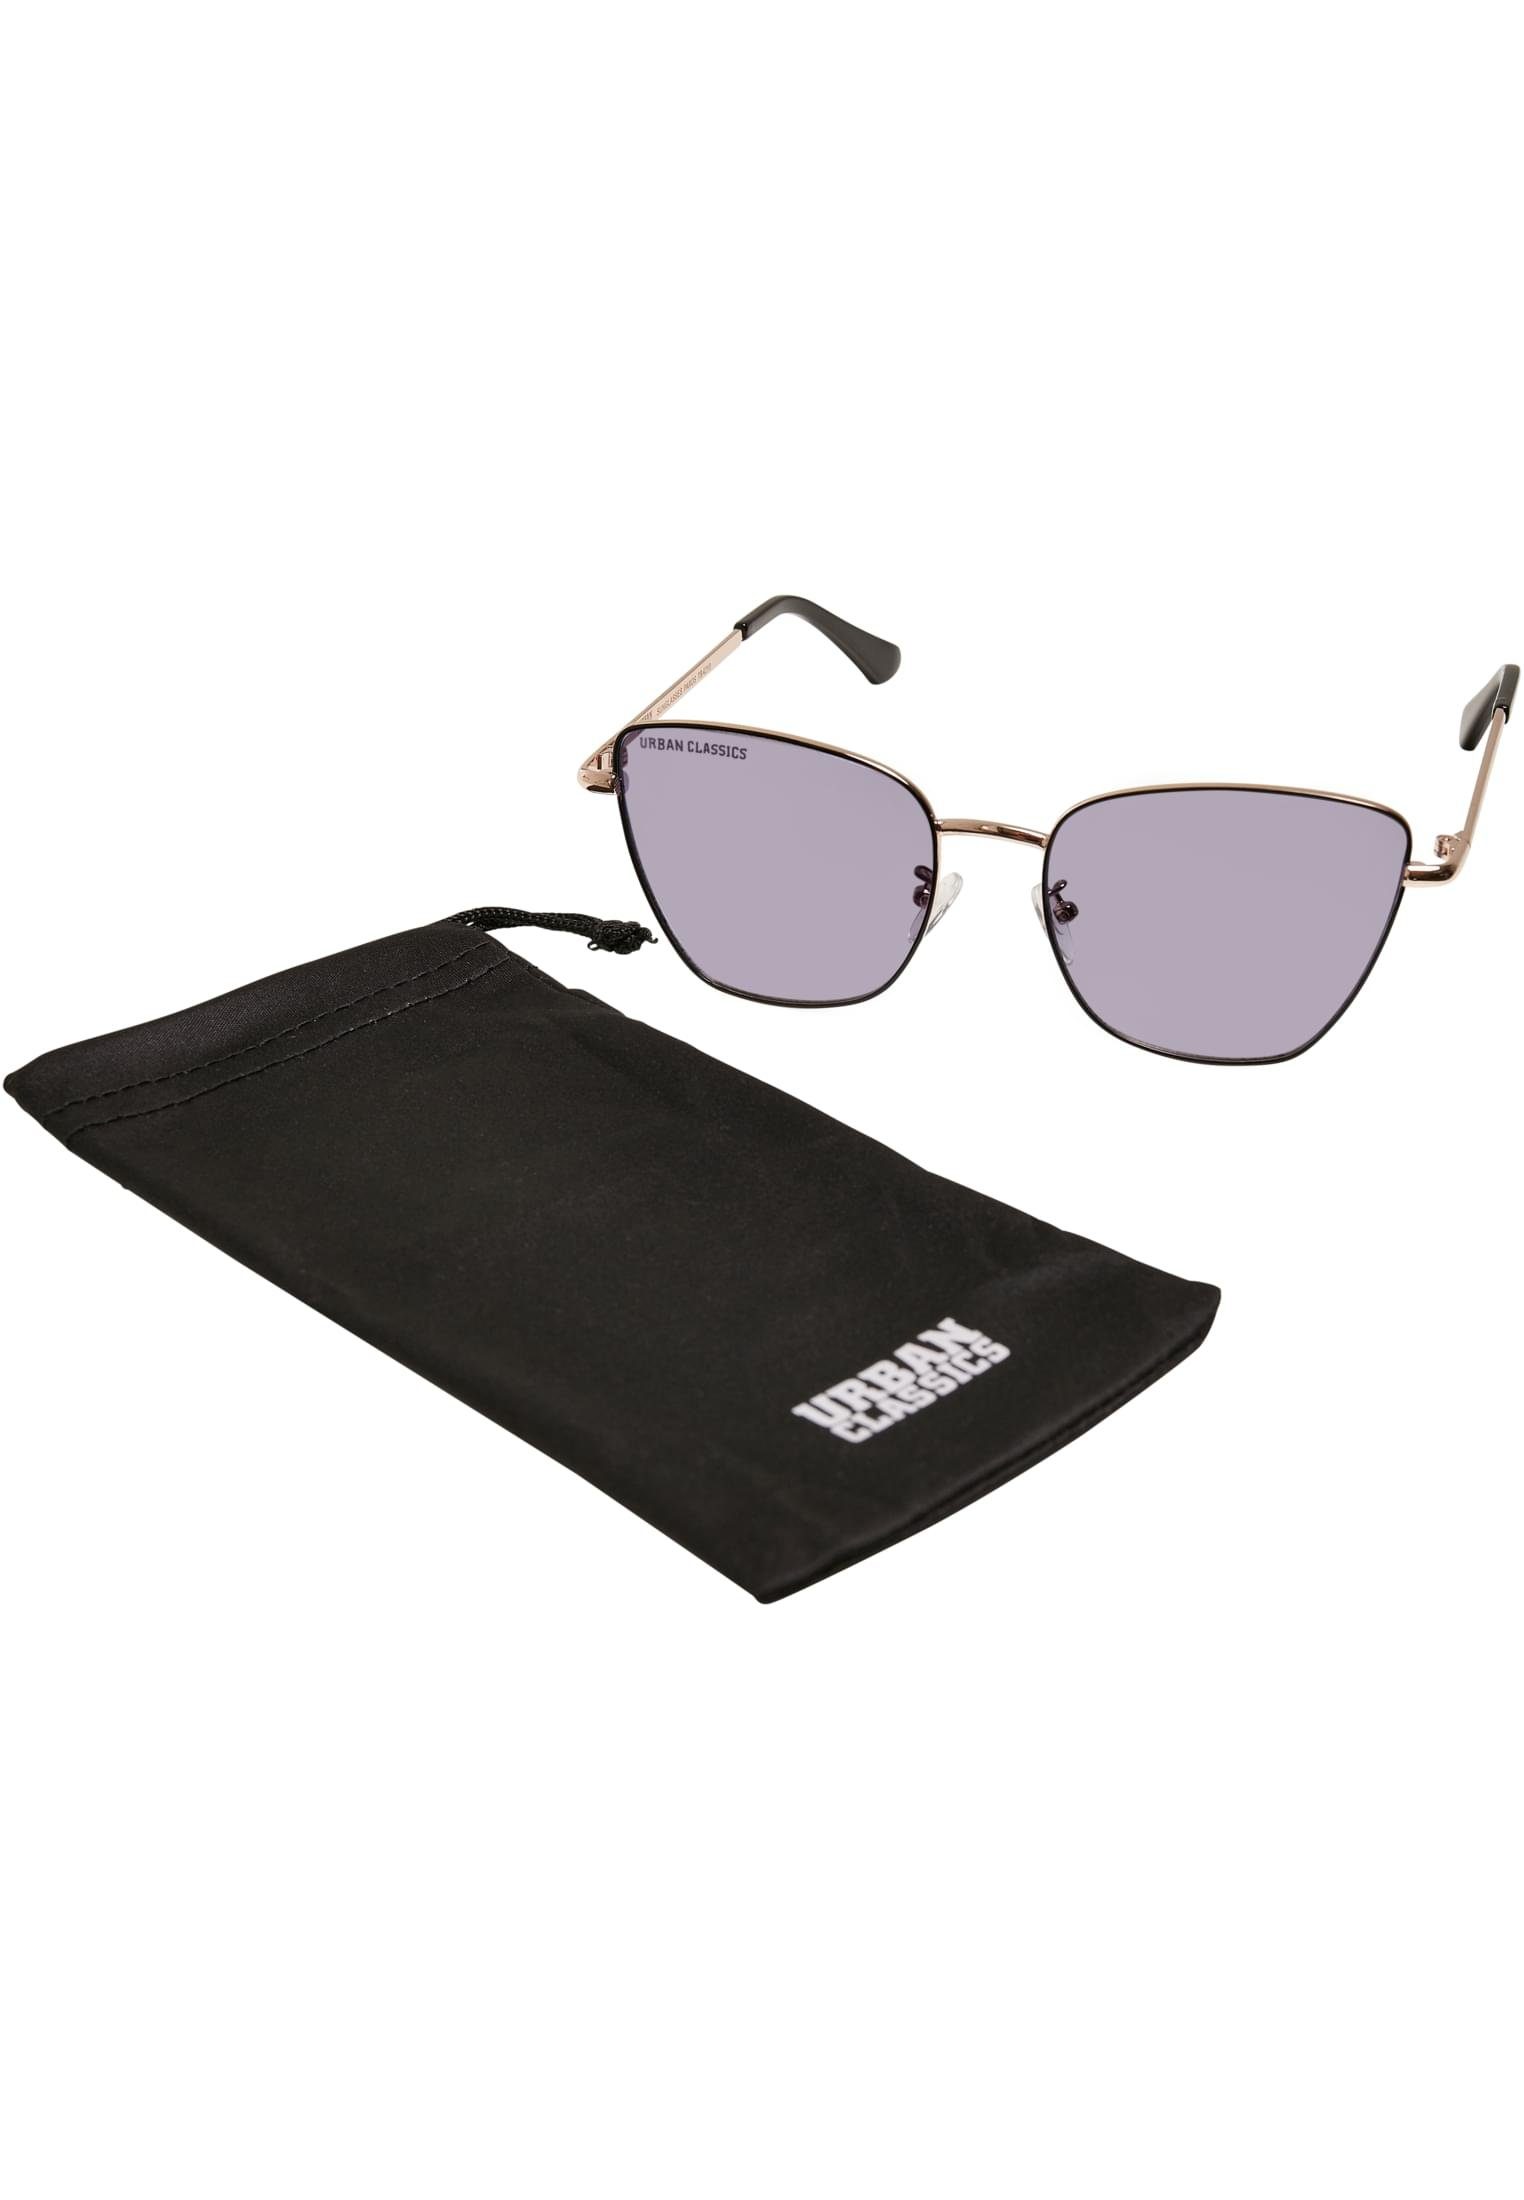 Sunglasses Unisex Paros URBAN Sonnenbrille CLASSICS